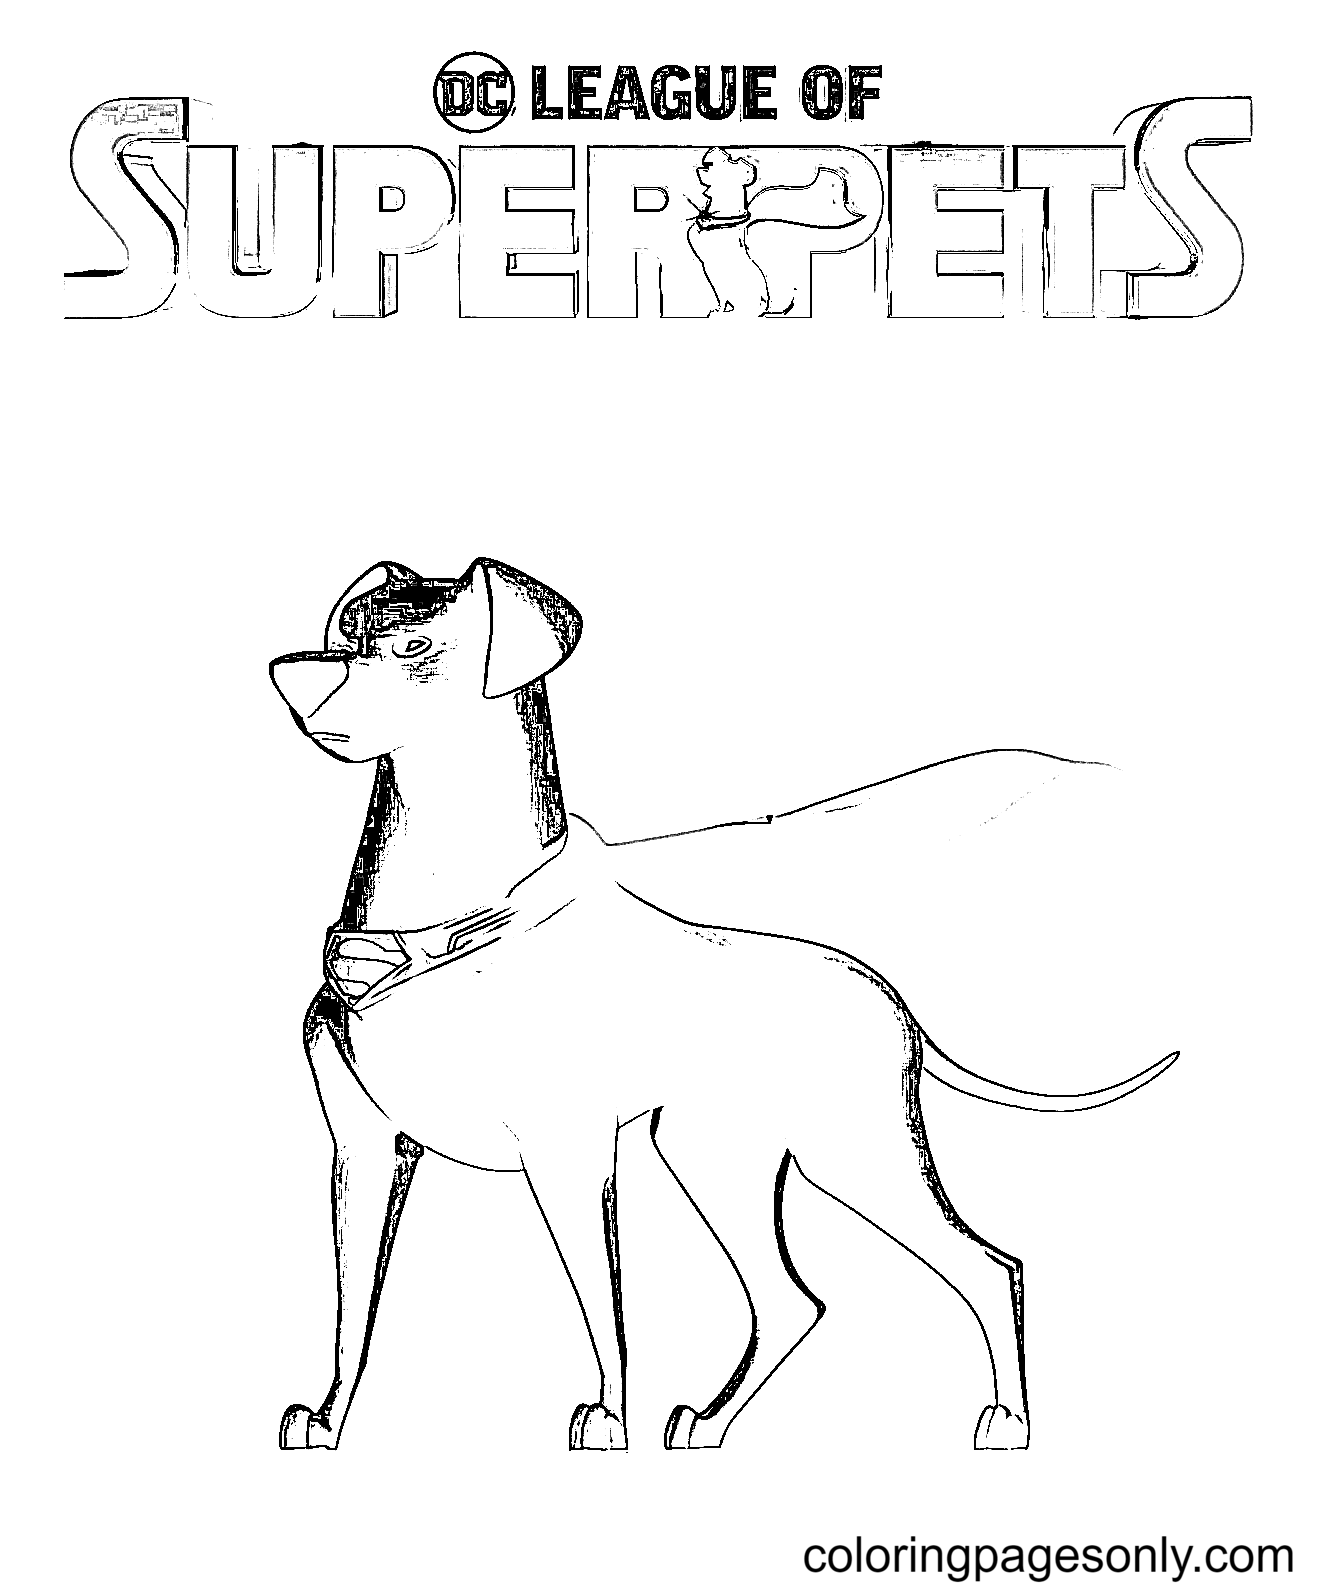 DC League of Super Pets Coloring Page